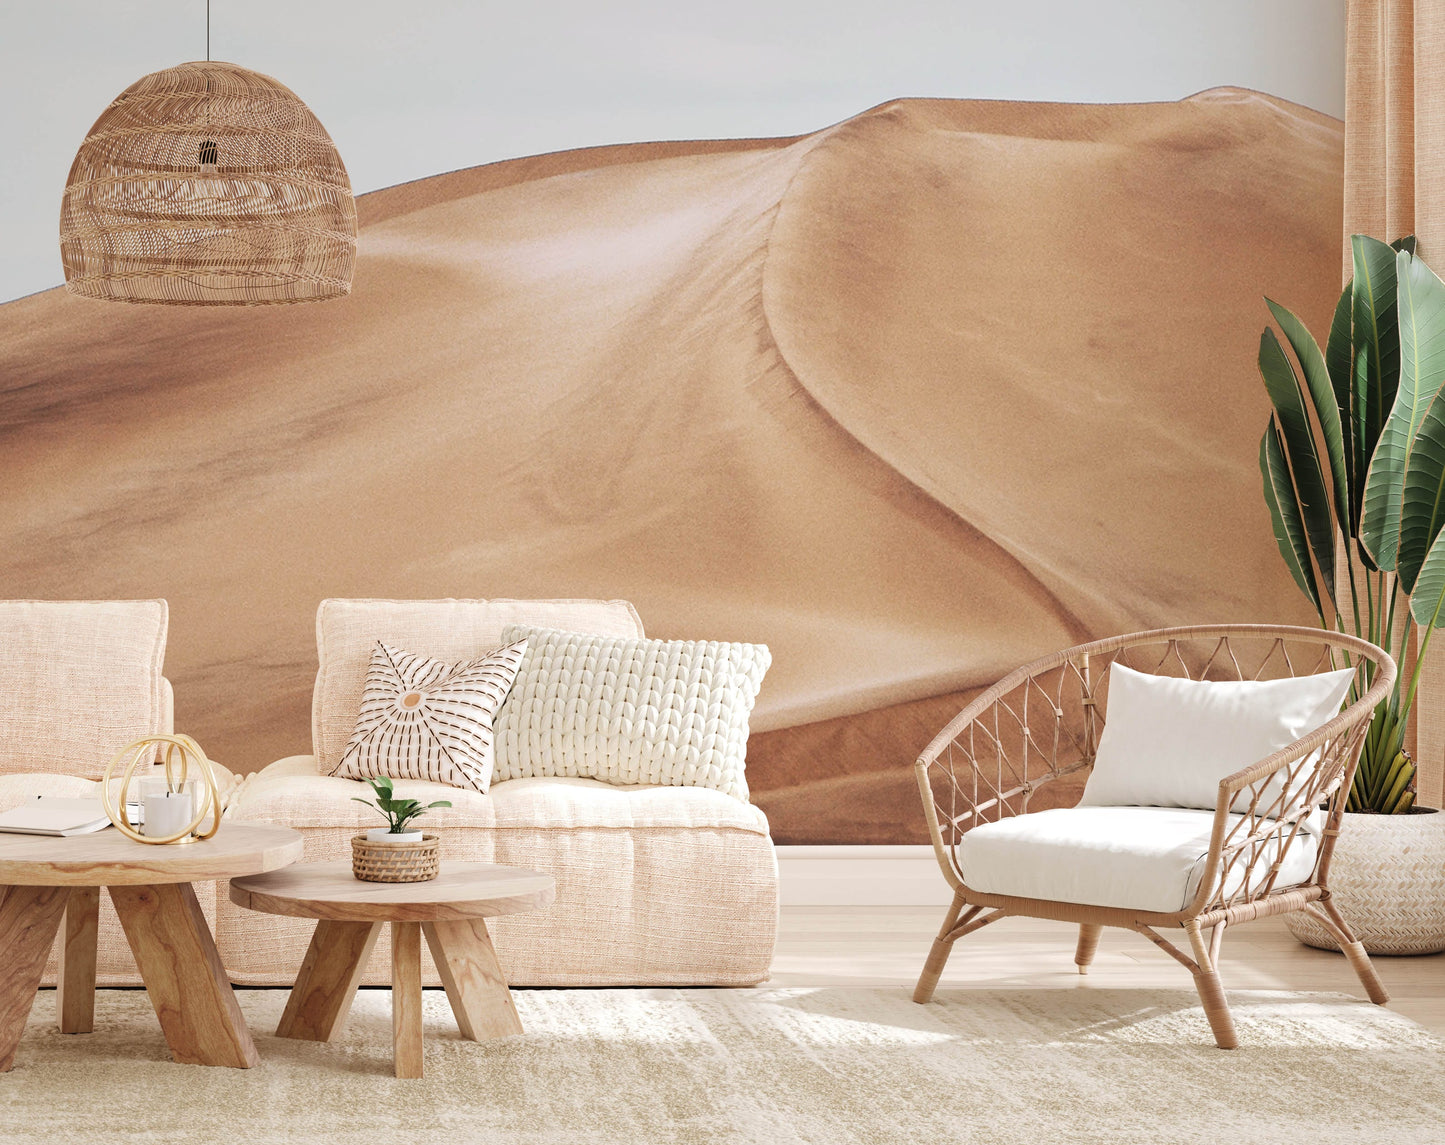 Infinite Desert Wallpaper Mural for Use as Decoration in the Living Room